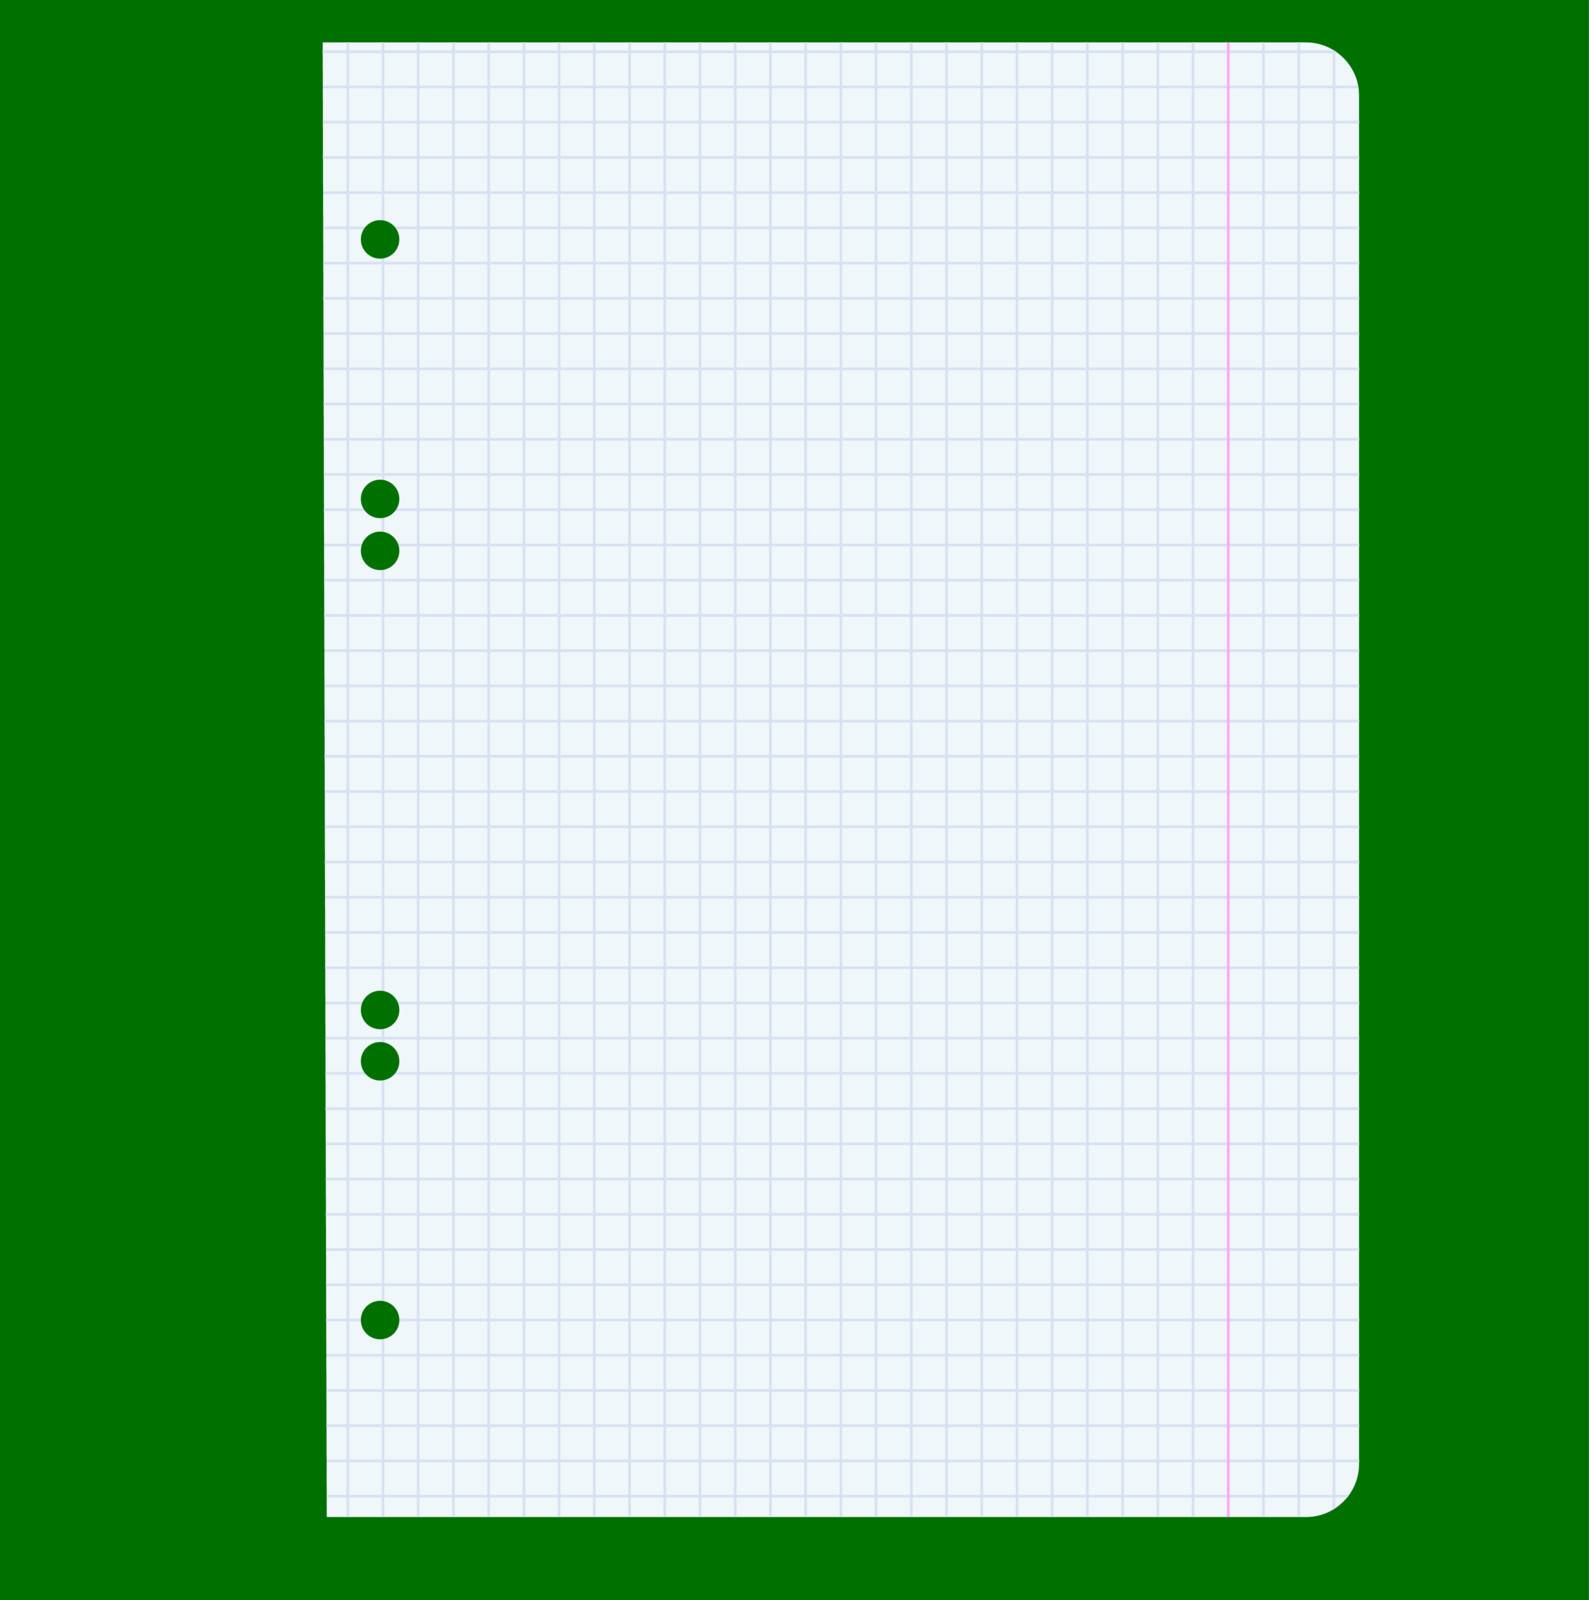 White squared blank white paper sheet. Vector illustration.